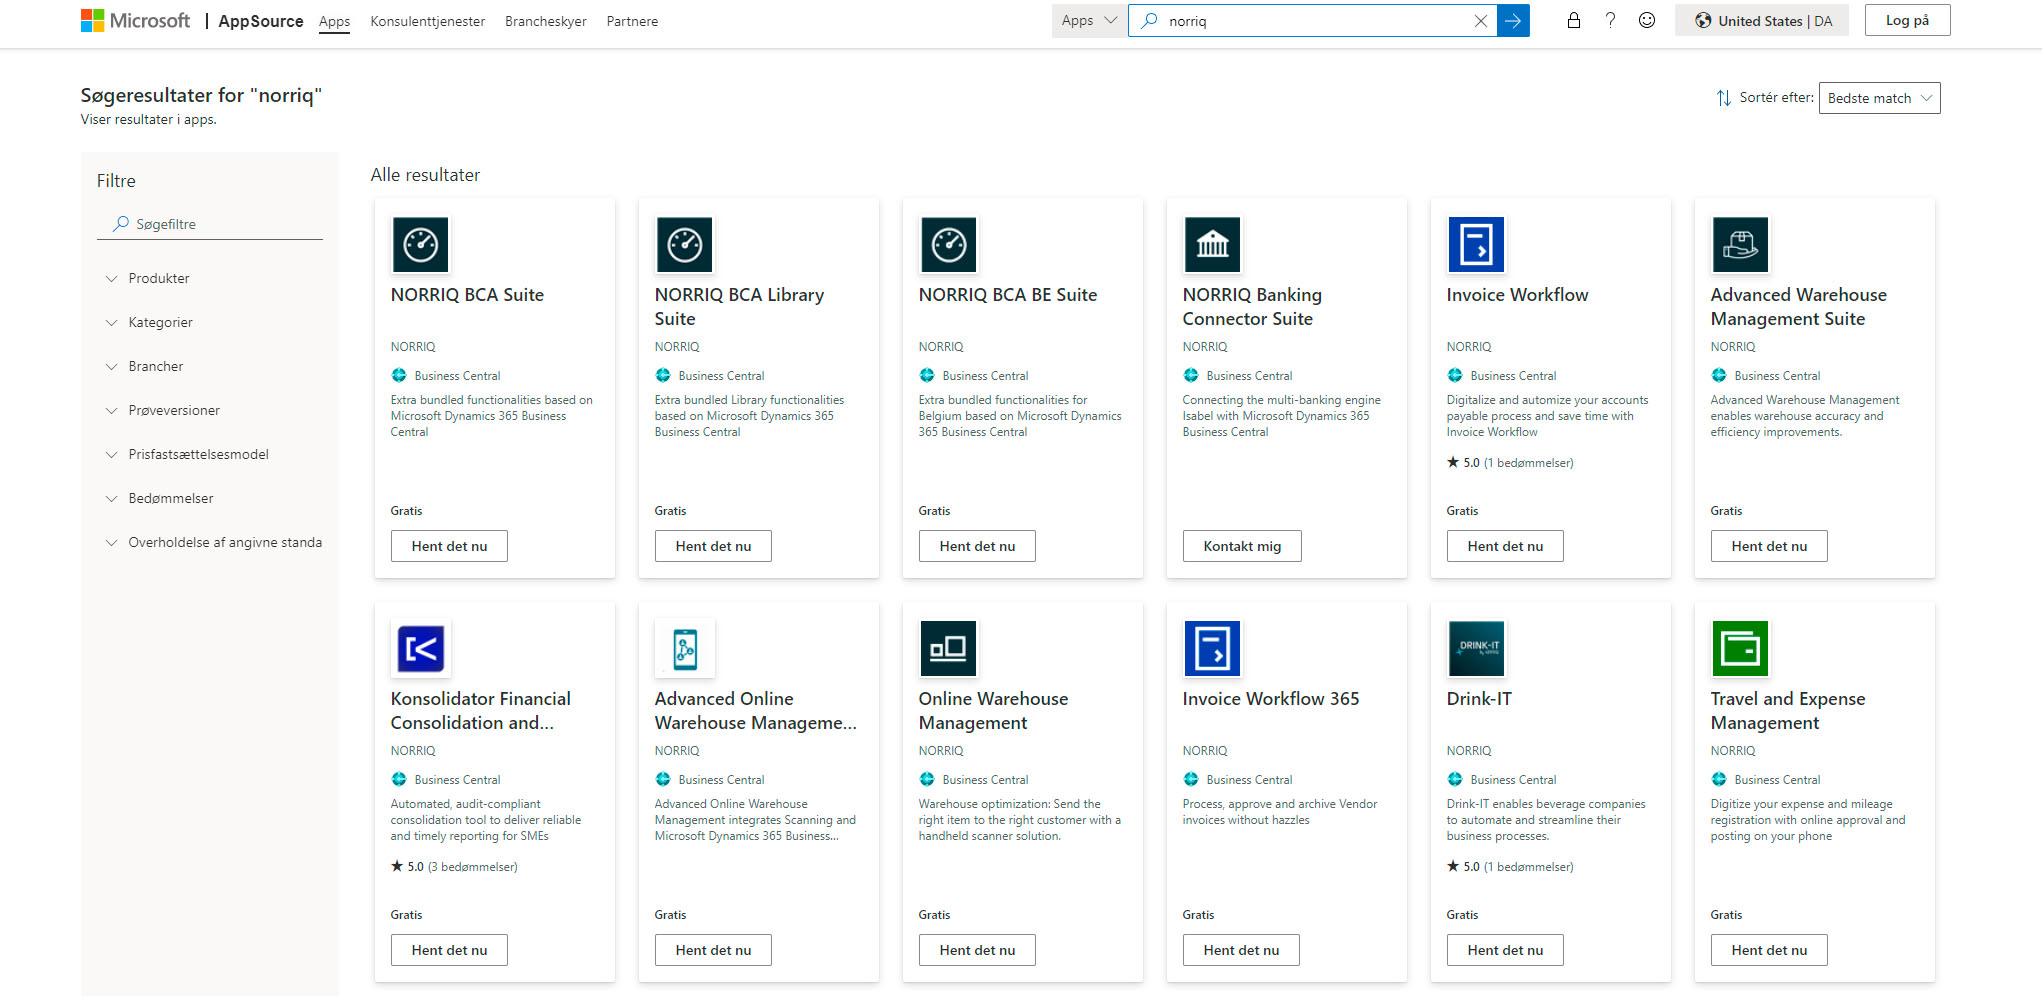 Du kan finde en lang række apps og tillægsløsninger til Business Central i Microsoft AppSource - NORRIQ